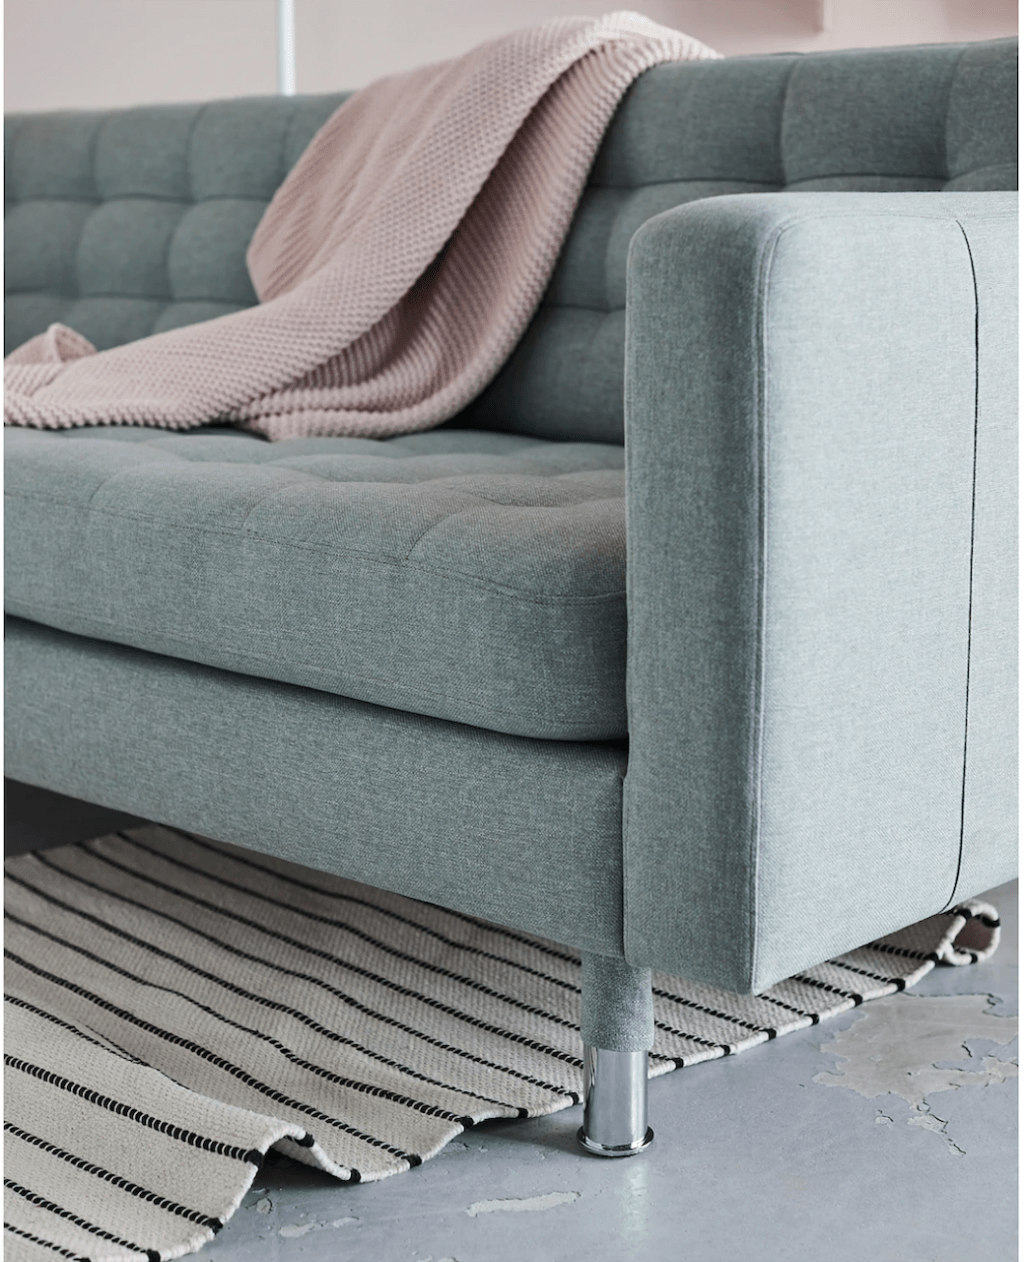 IKEA modern green sofa with blanket 